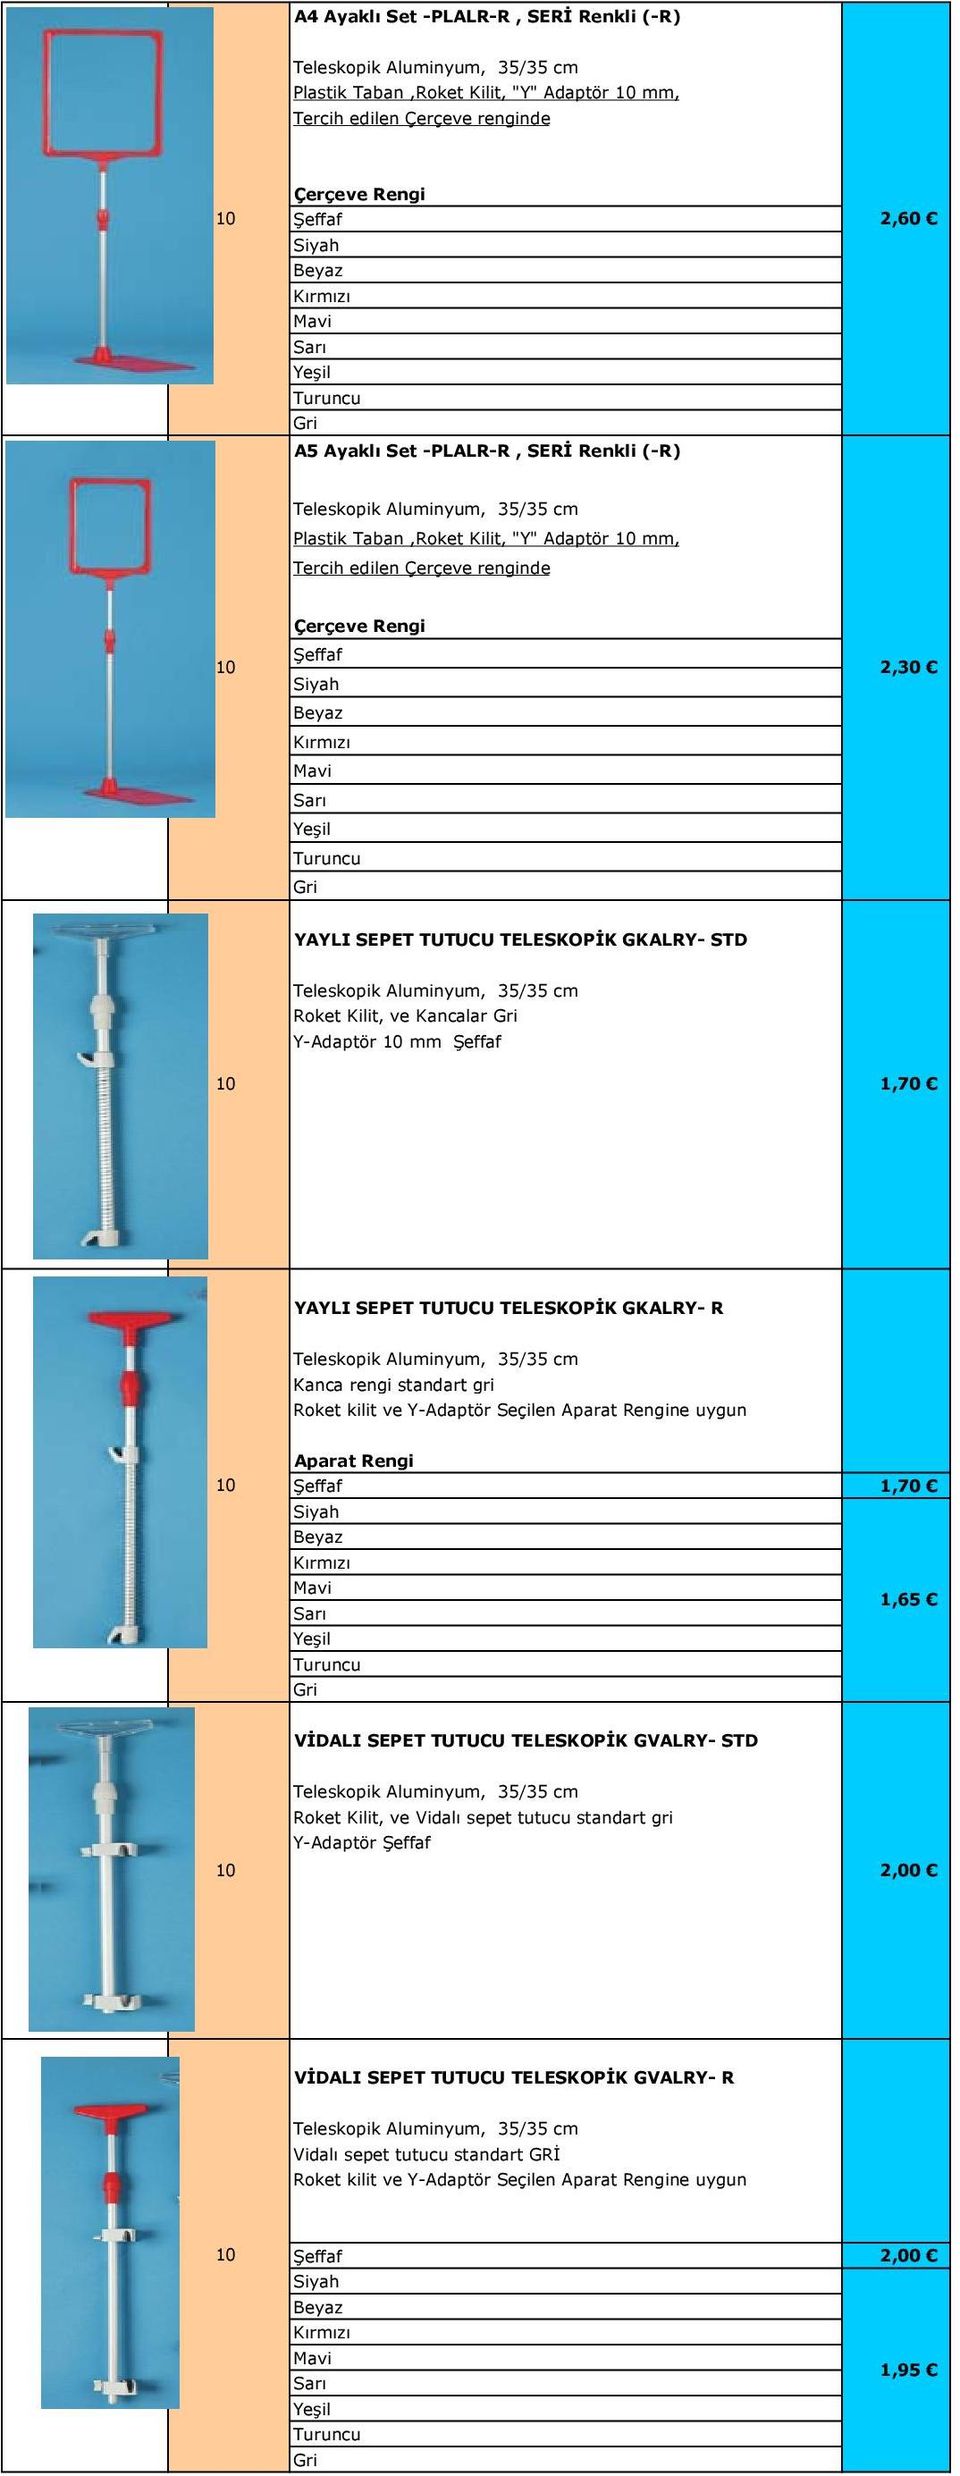 35/35 cm Roket Kilit, ve Kancalar Y-Adaptör mm 1,70 YAYLI SEPET TUTUCU TELESKOPİK GKALRY- R Teleskopik Aluminyum, 35/35 cm Kanca rengi standart gri Roket kilit ve Y-Adaptör Seçilen Aparat Rengine